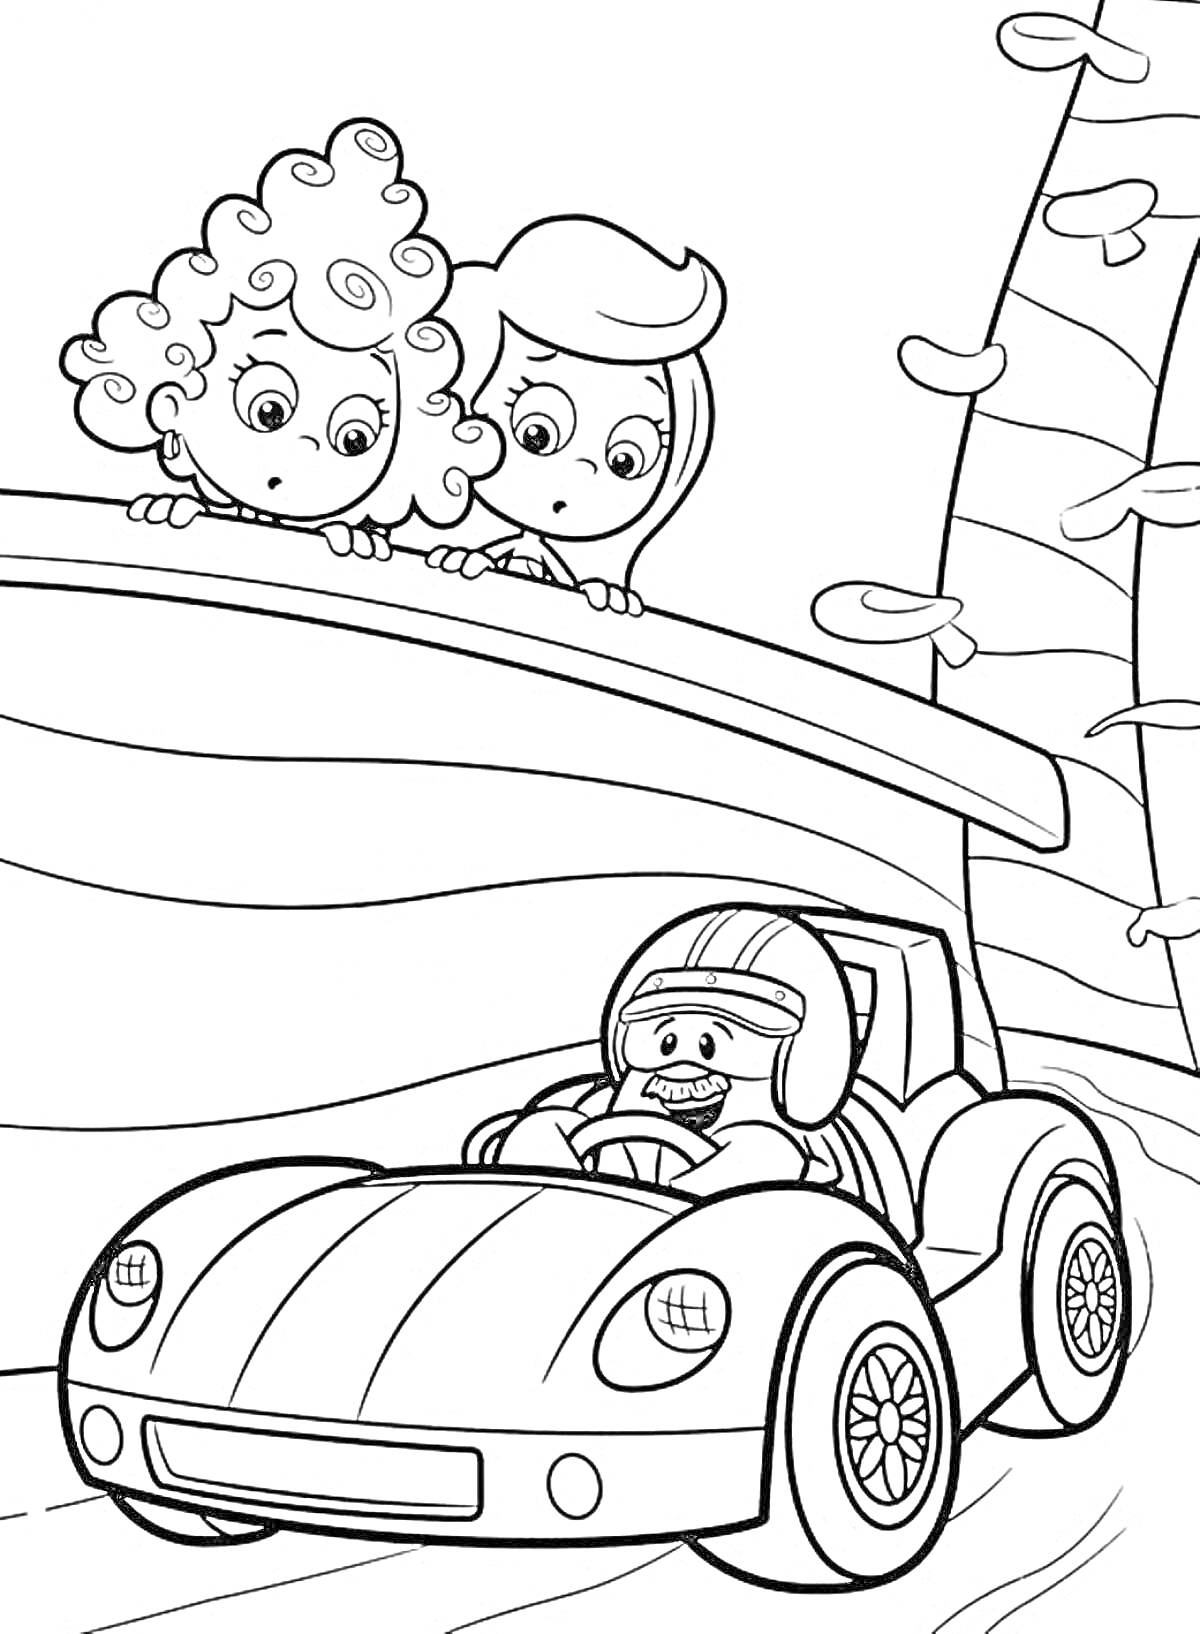 Две девочки-гуппи смотрят с моста на мальчика в гоночной машине